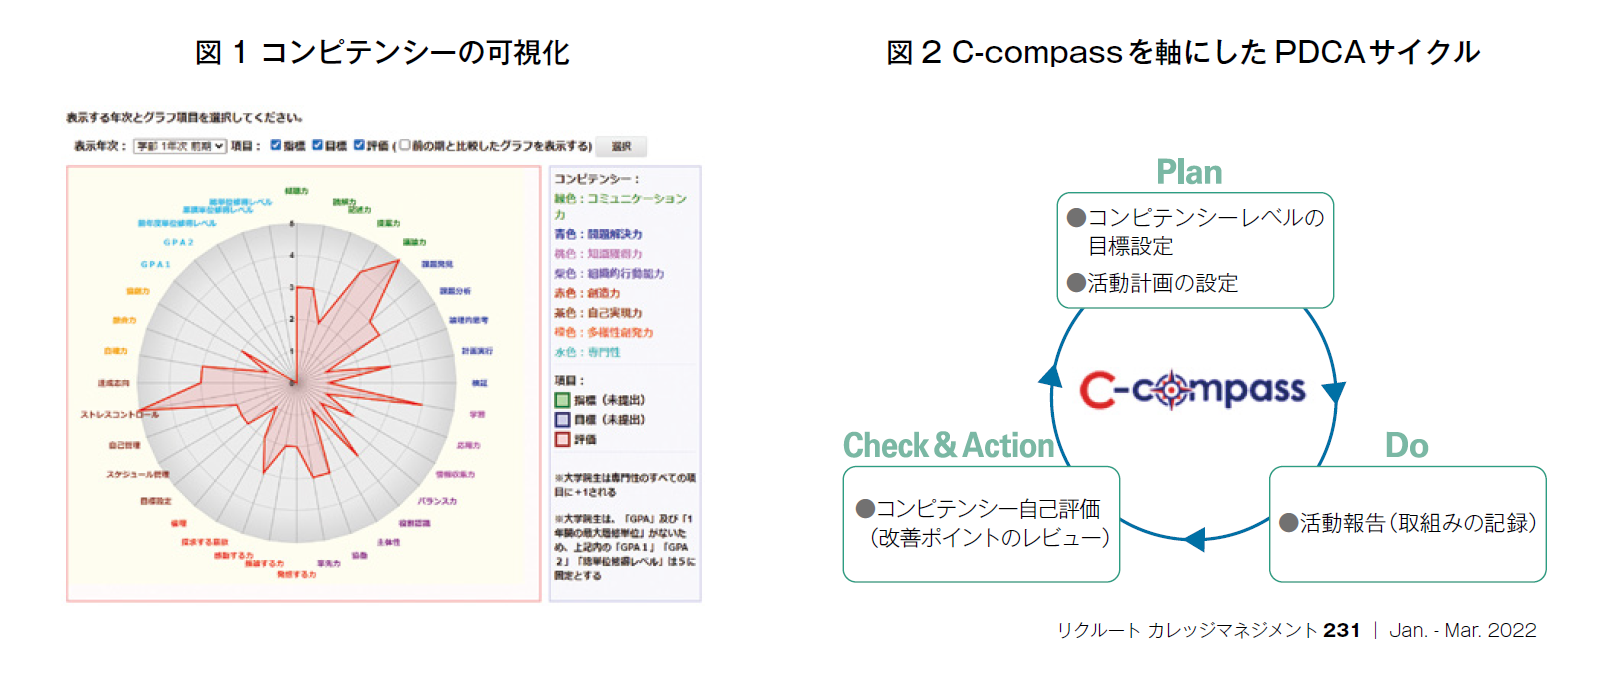 図1 コンピテンシーの可視化、図2 C-compassを軸にしたPDCAサイクル